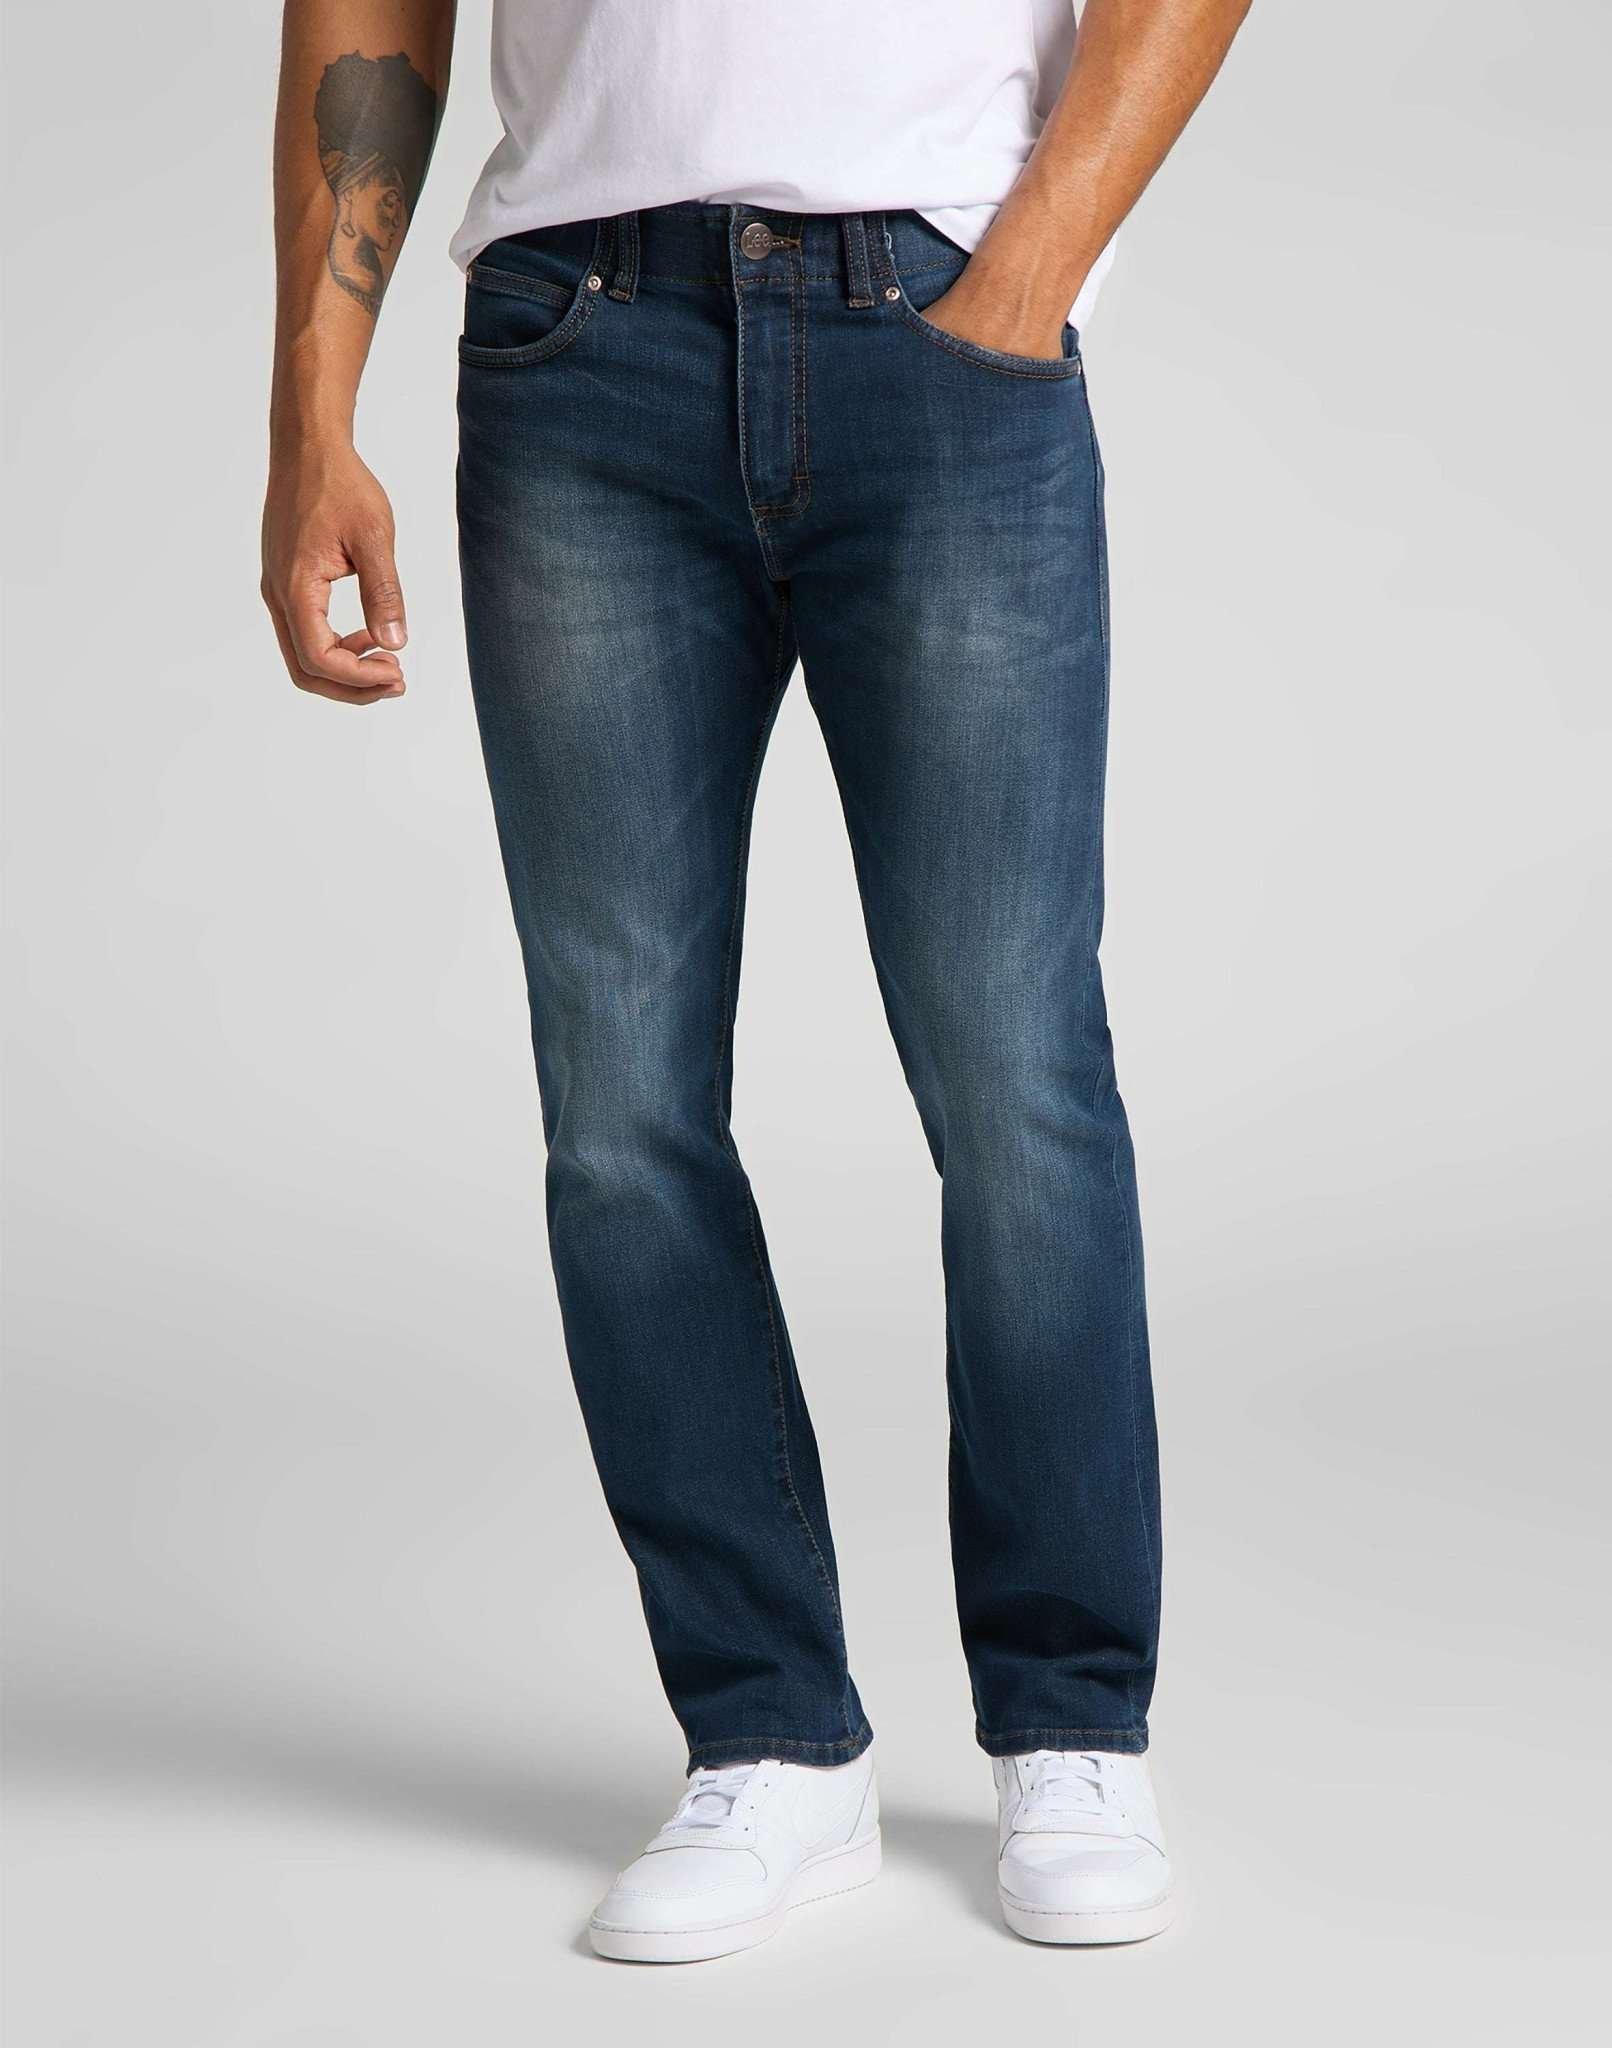 Jeans Slim Fit Mvp Herren Blau Denim L32/W30 von Lee